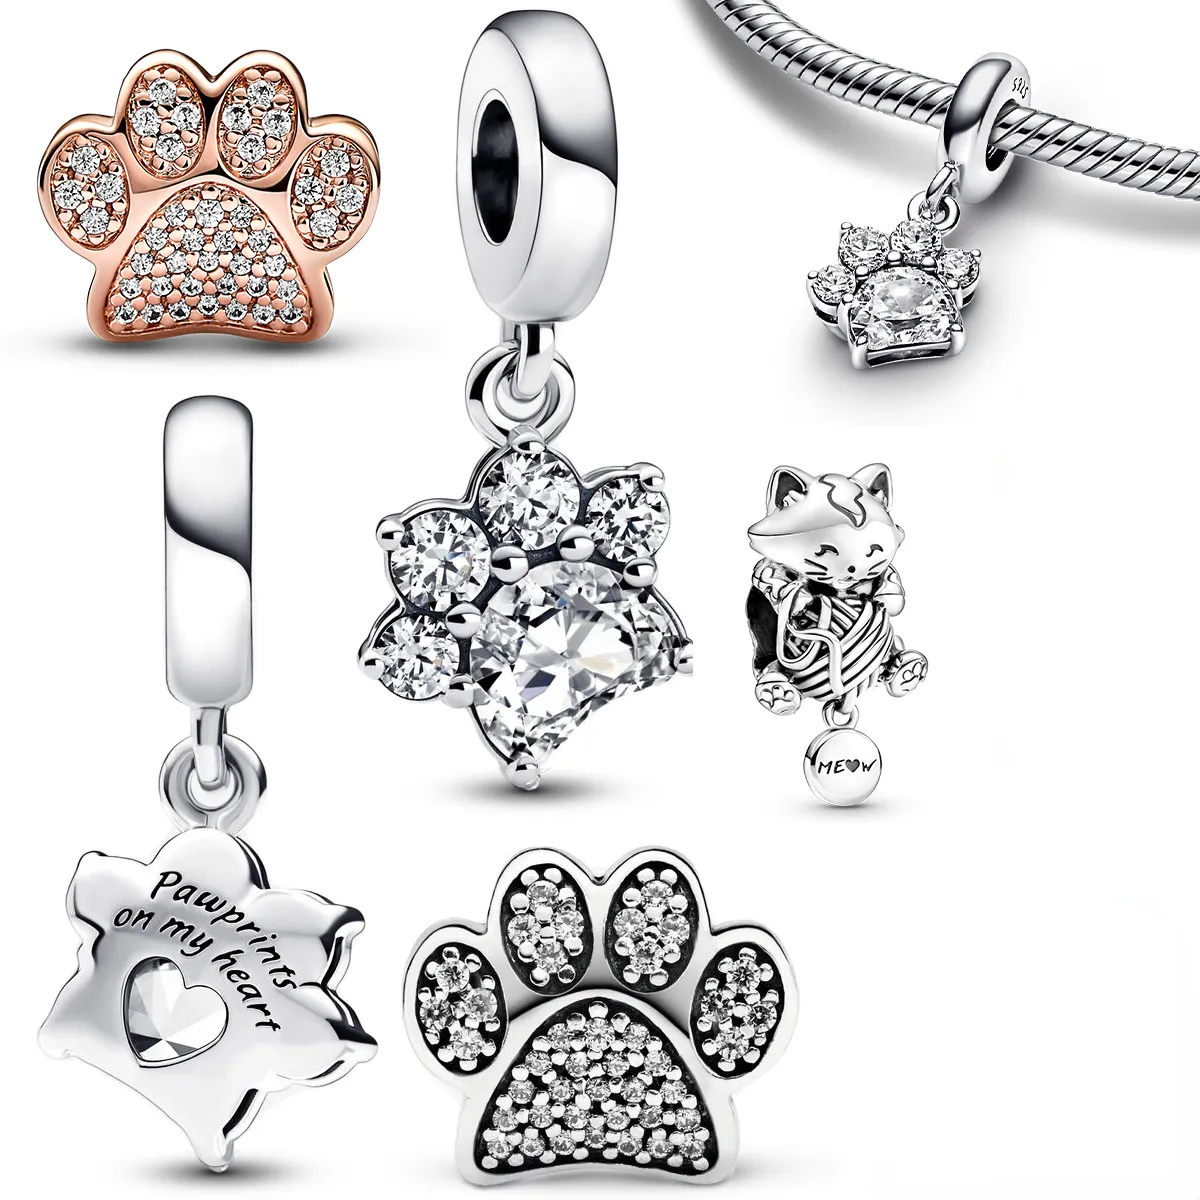 Nieuwe trendy 100% 925 Sterling Silver Charm prachtige glanzende pootafdruk hanger kitten Charm gemonteerd pandora armband DIY sieraden geschenk maken